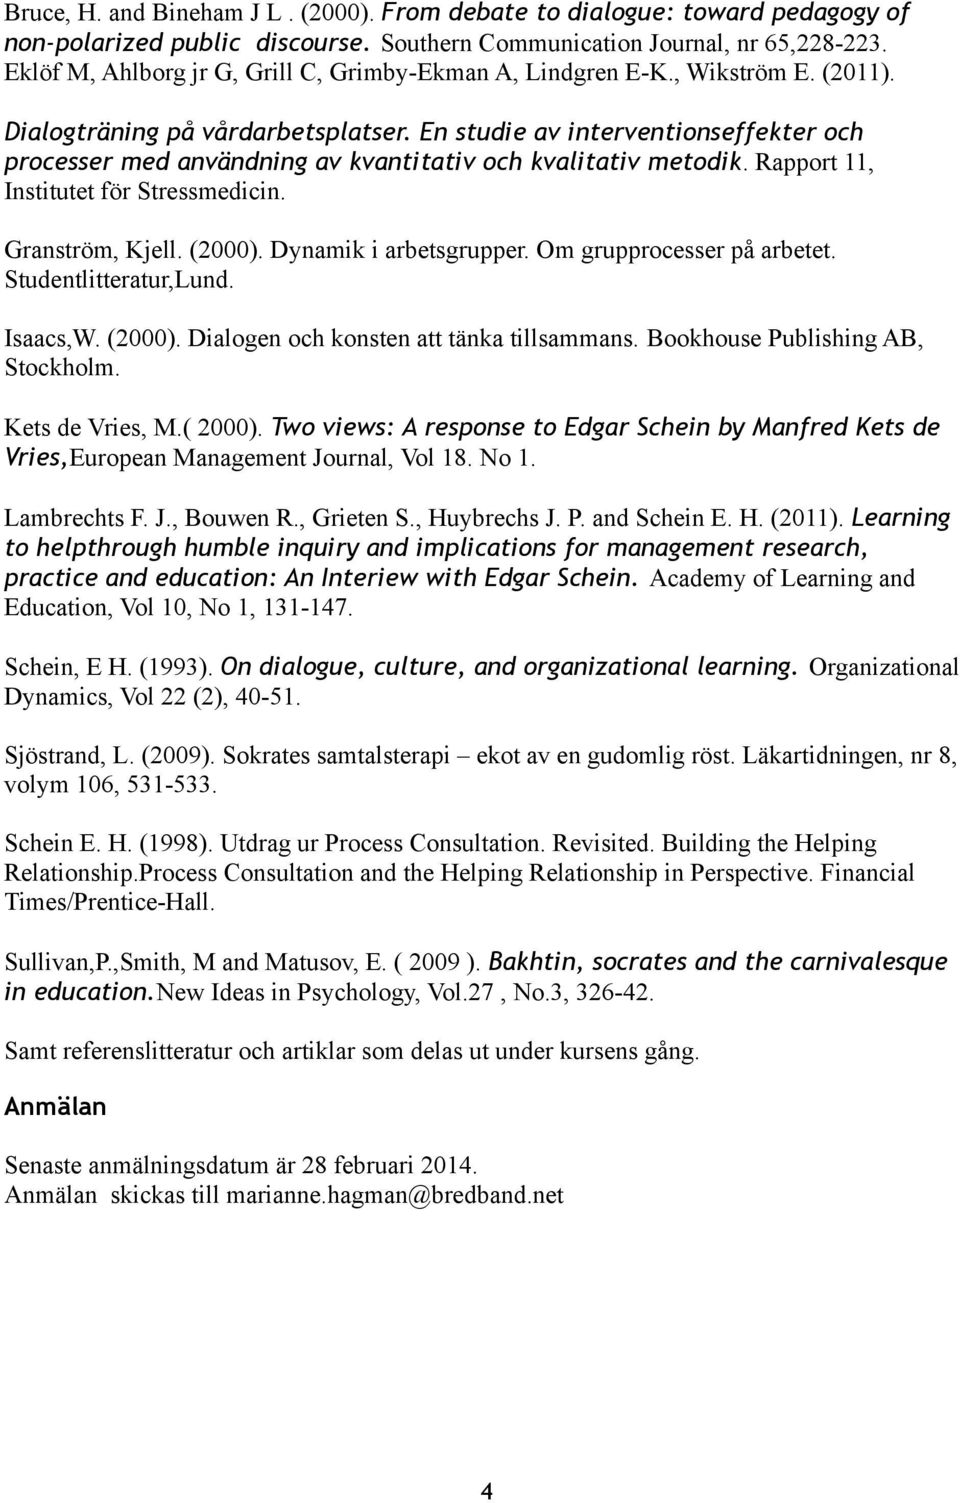 En studie av interventionseffekter och processer med användning av kvantitativ och kvalitativ metodik. Rapport 11, Institutet för Stressmedicin. Granström, Kjell. (2000). Dynamik i arbetsgrupper.